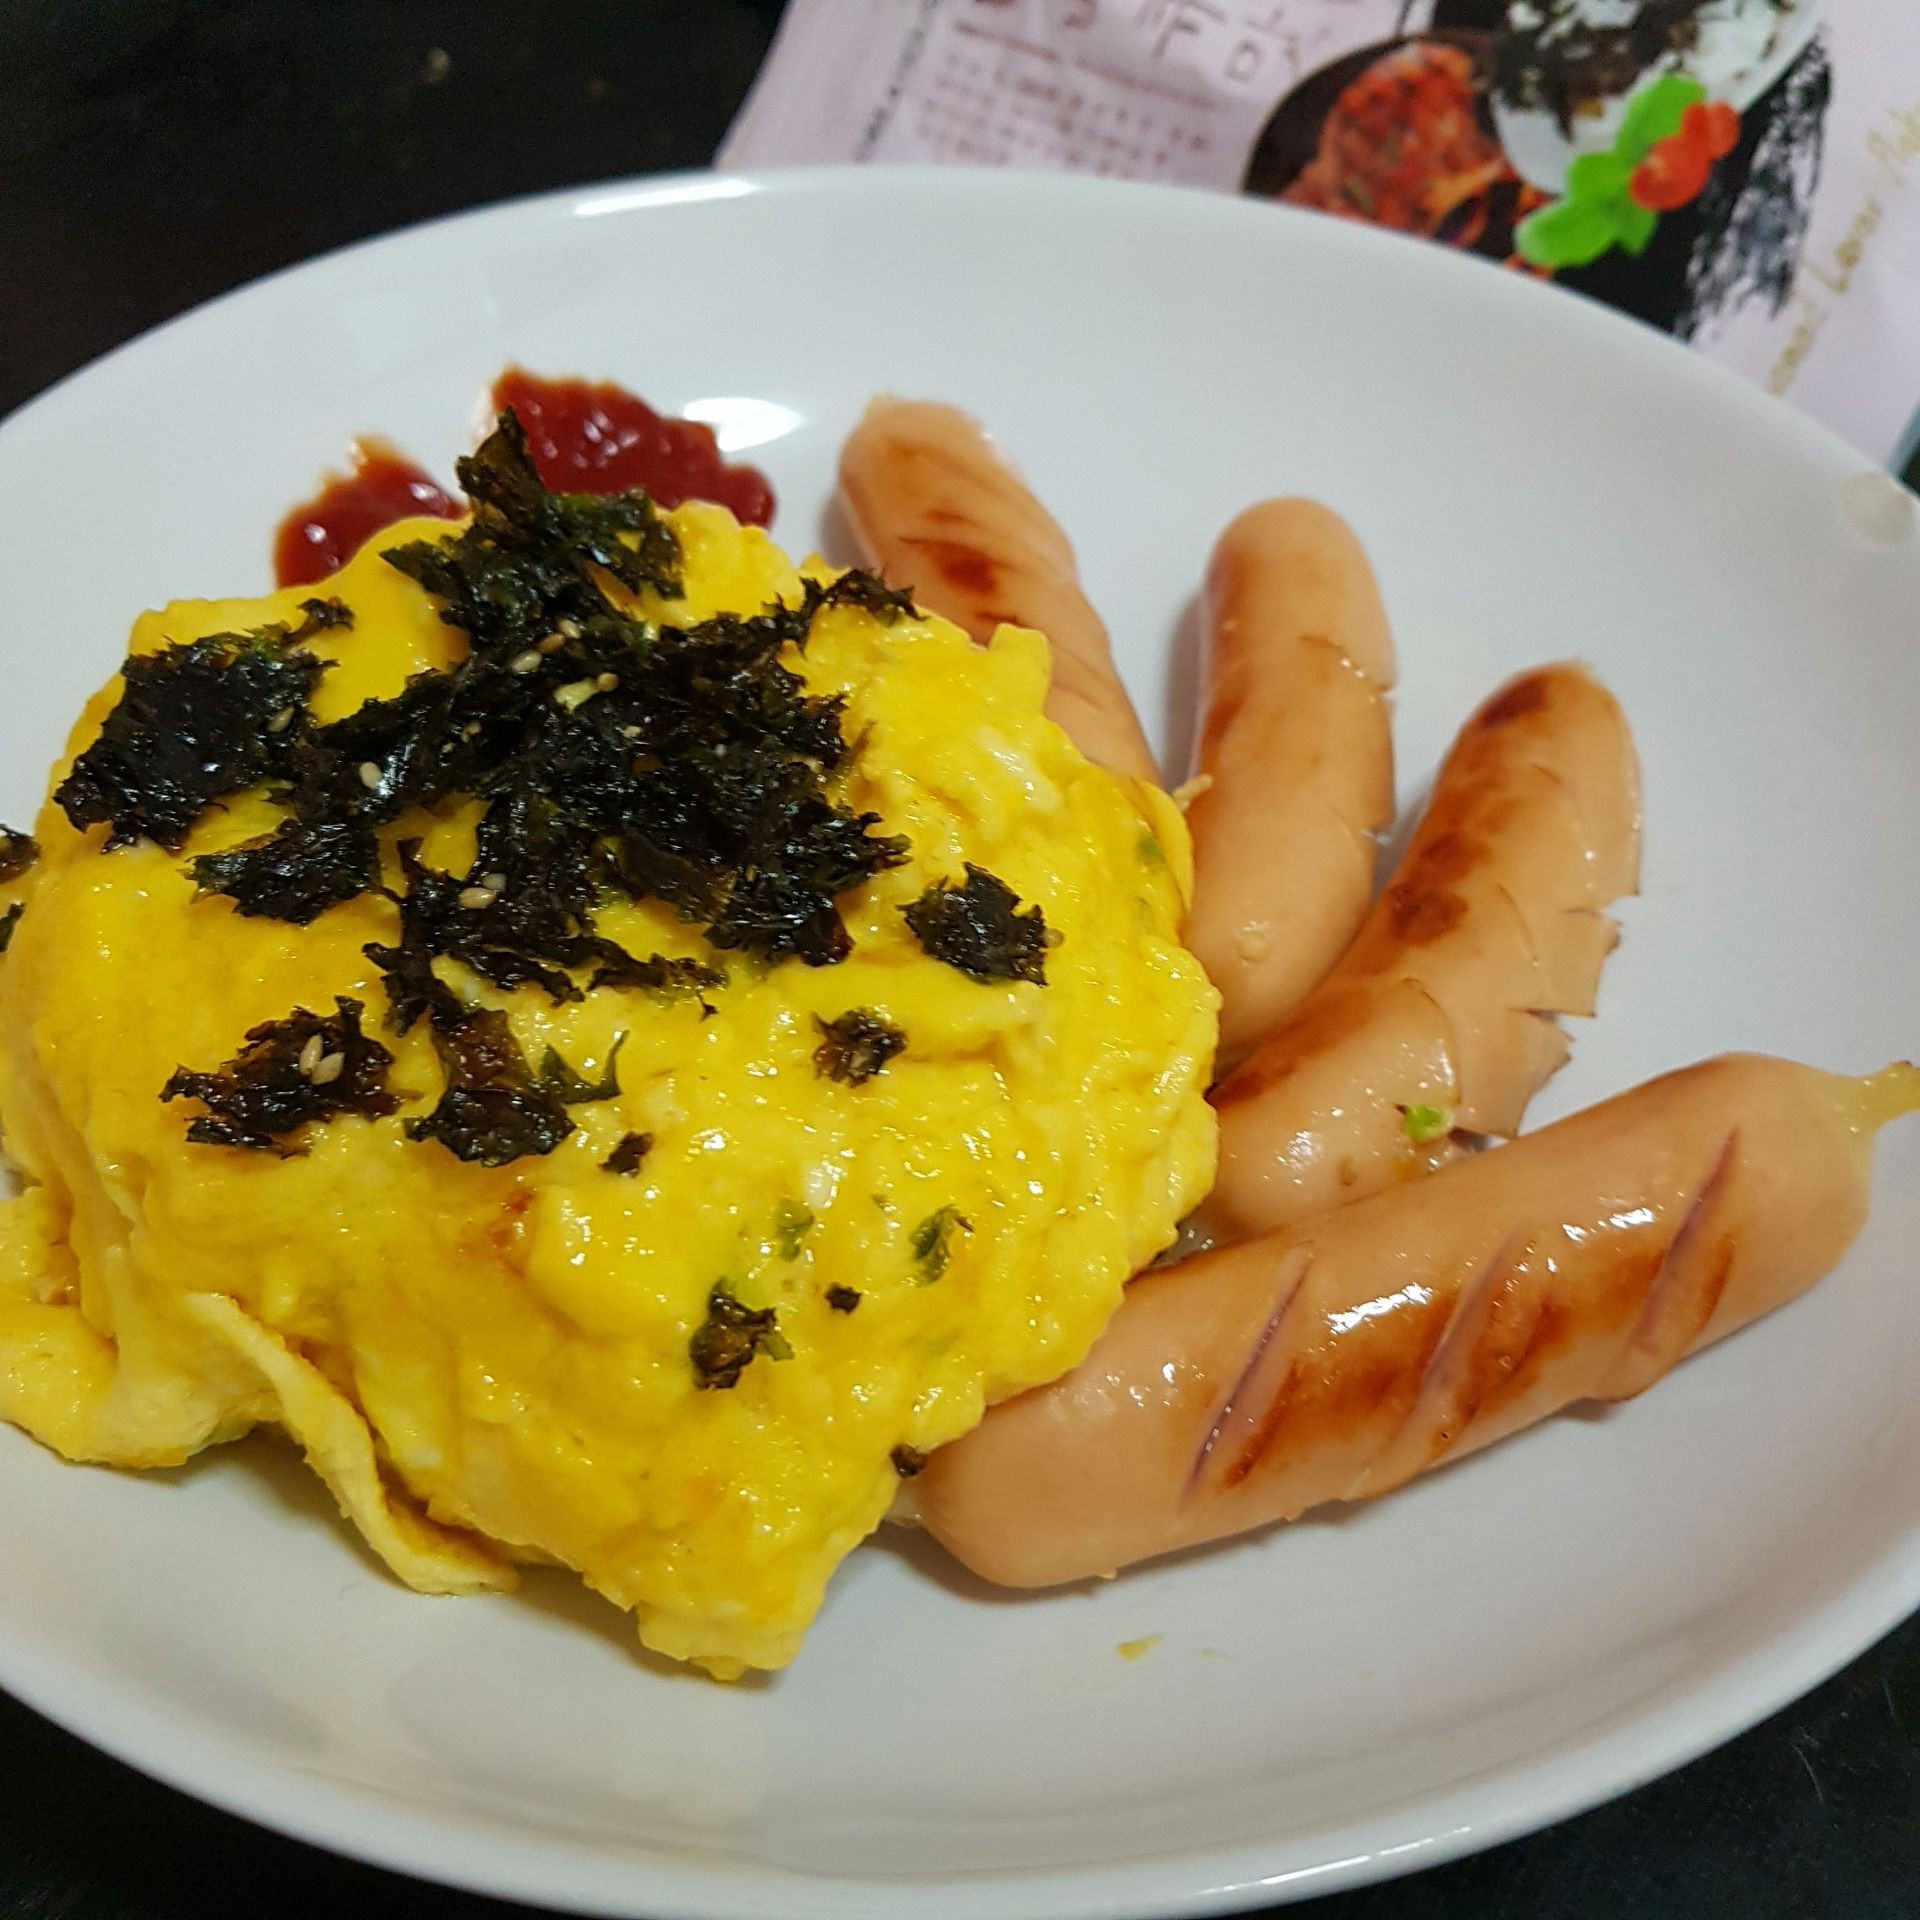 ข้าวไข่ข้น ไส้กรอก🍳
creamy omelette & Hot Dog